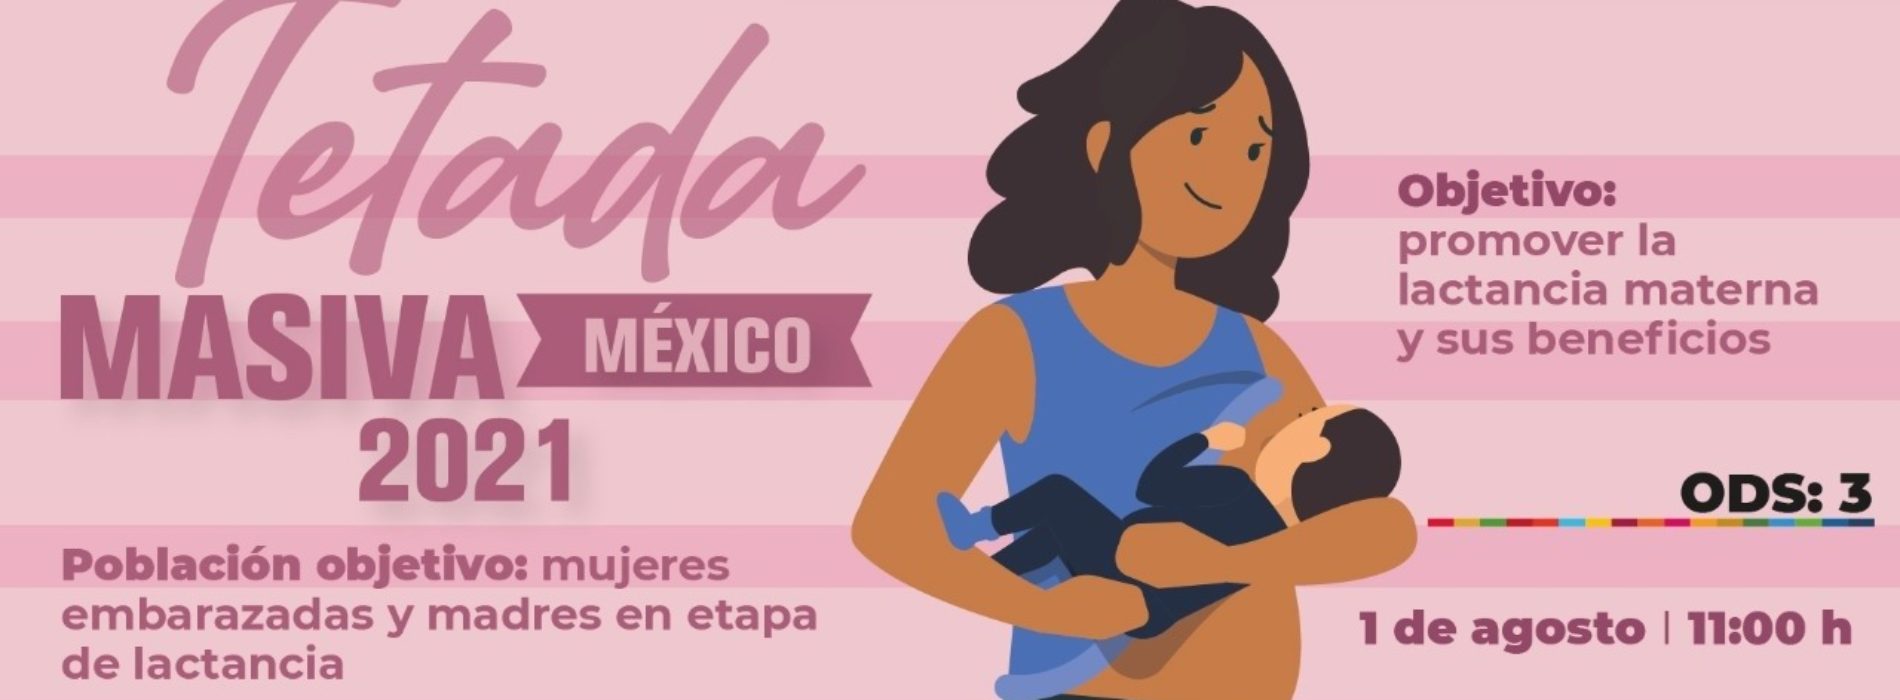 Invita Ayuntamiento de Oaxaca a  a la “Tetada Masiva México 2021”